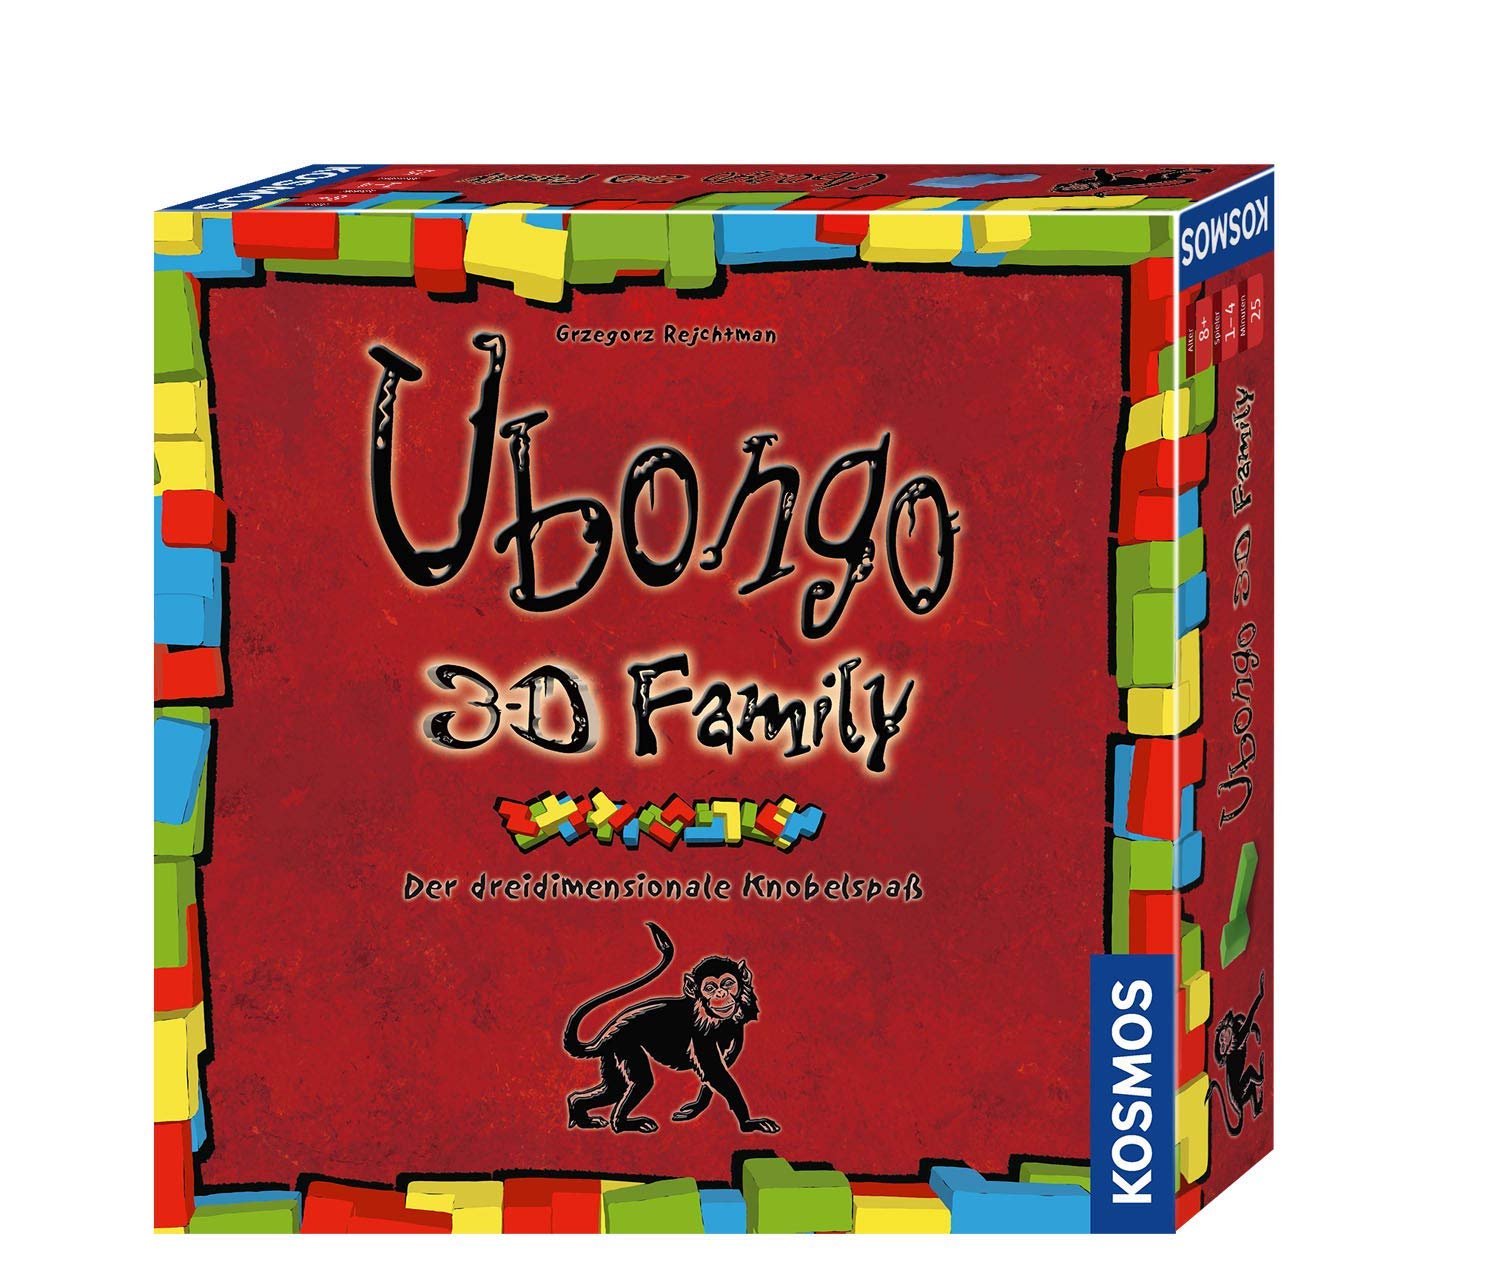 Kosmos 694258, Ubongo 3-D Family, Der dreidimensionale Knobelspaß, Gesellschaftsspiel, Familienspiel, Brettspiel: 1-4 Personen ab 8 Jahren